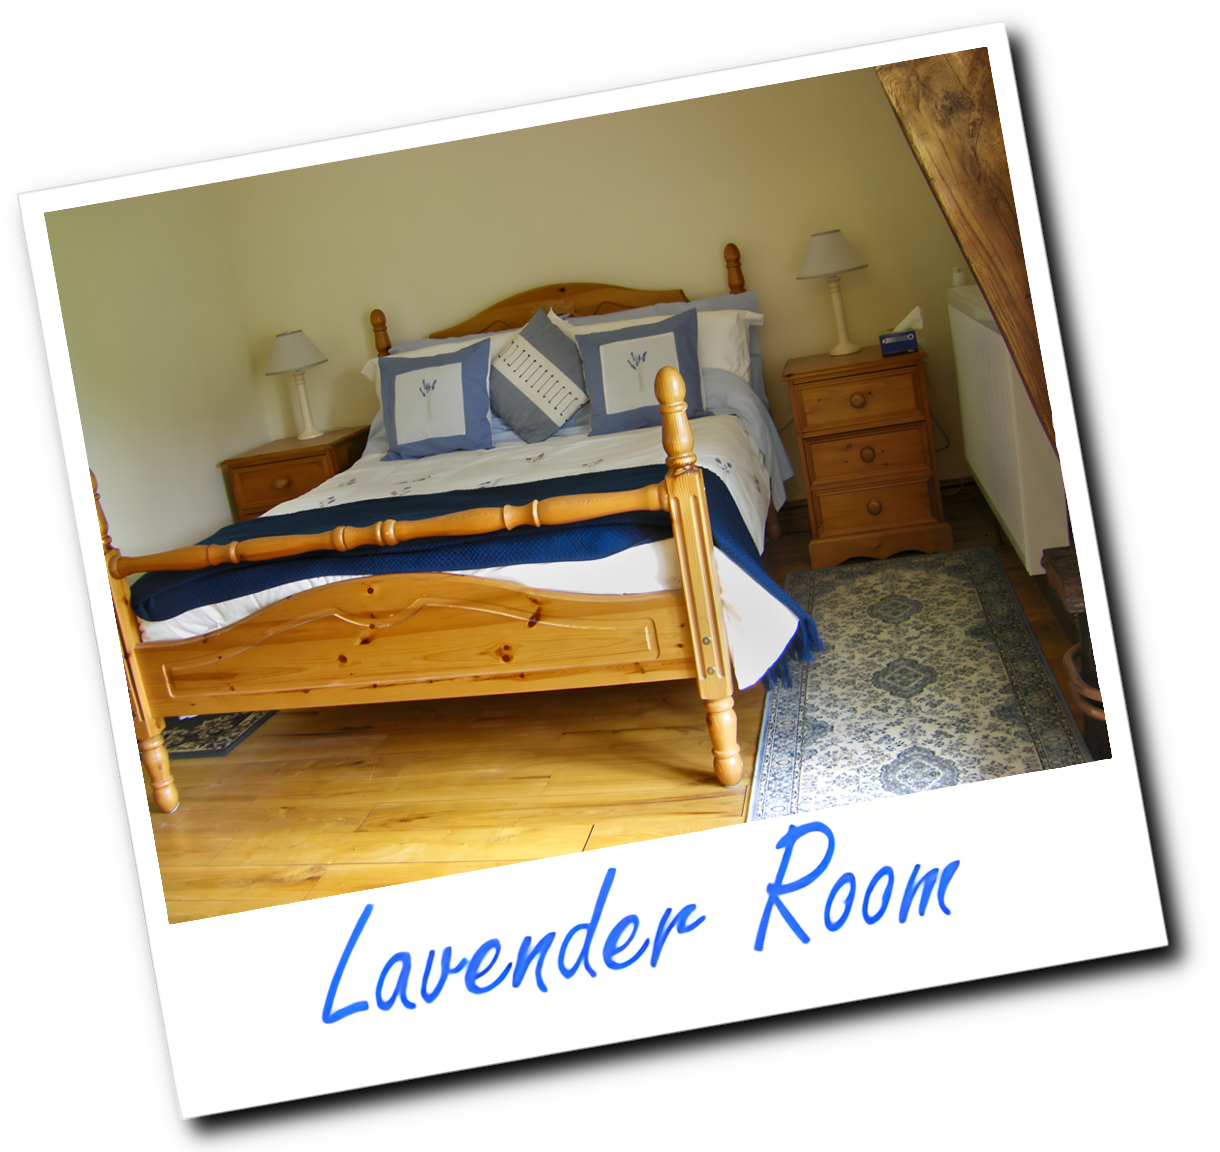 Lavender room